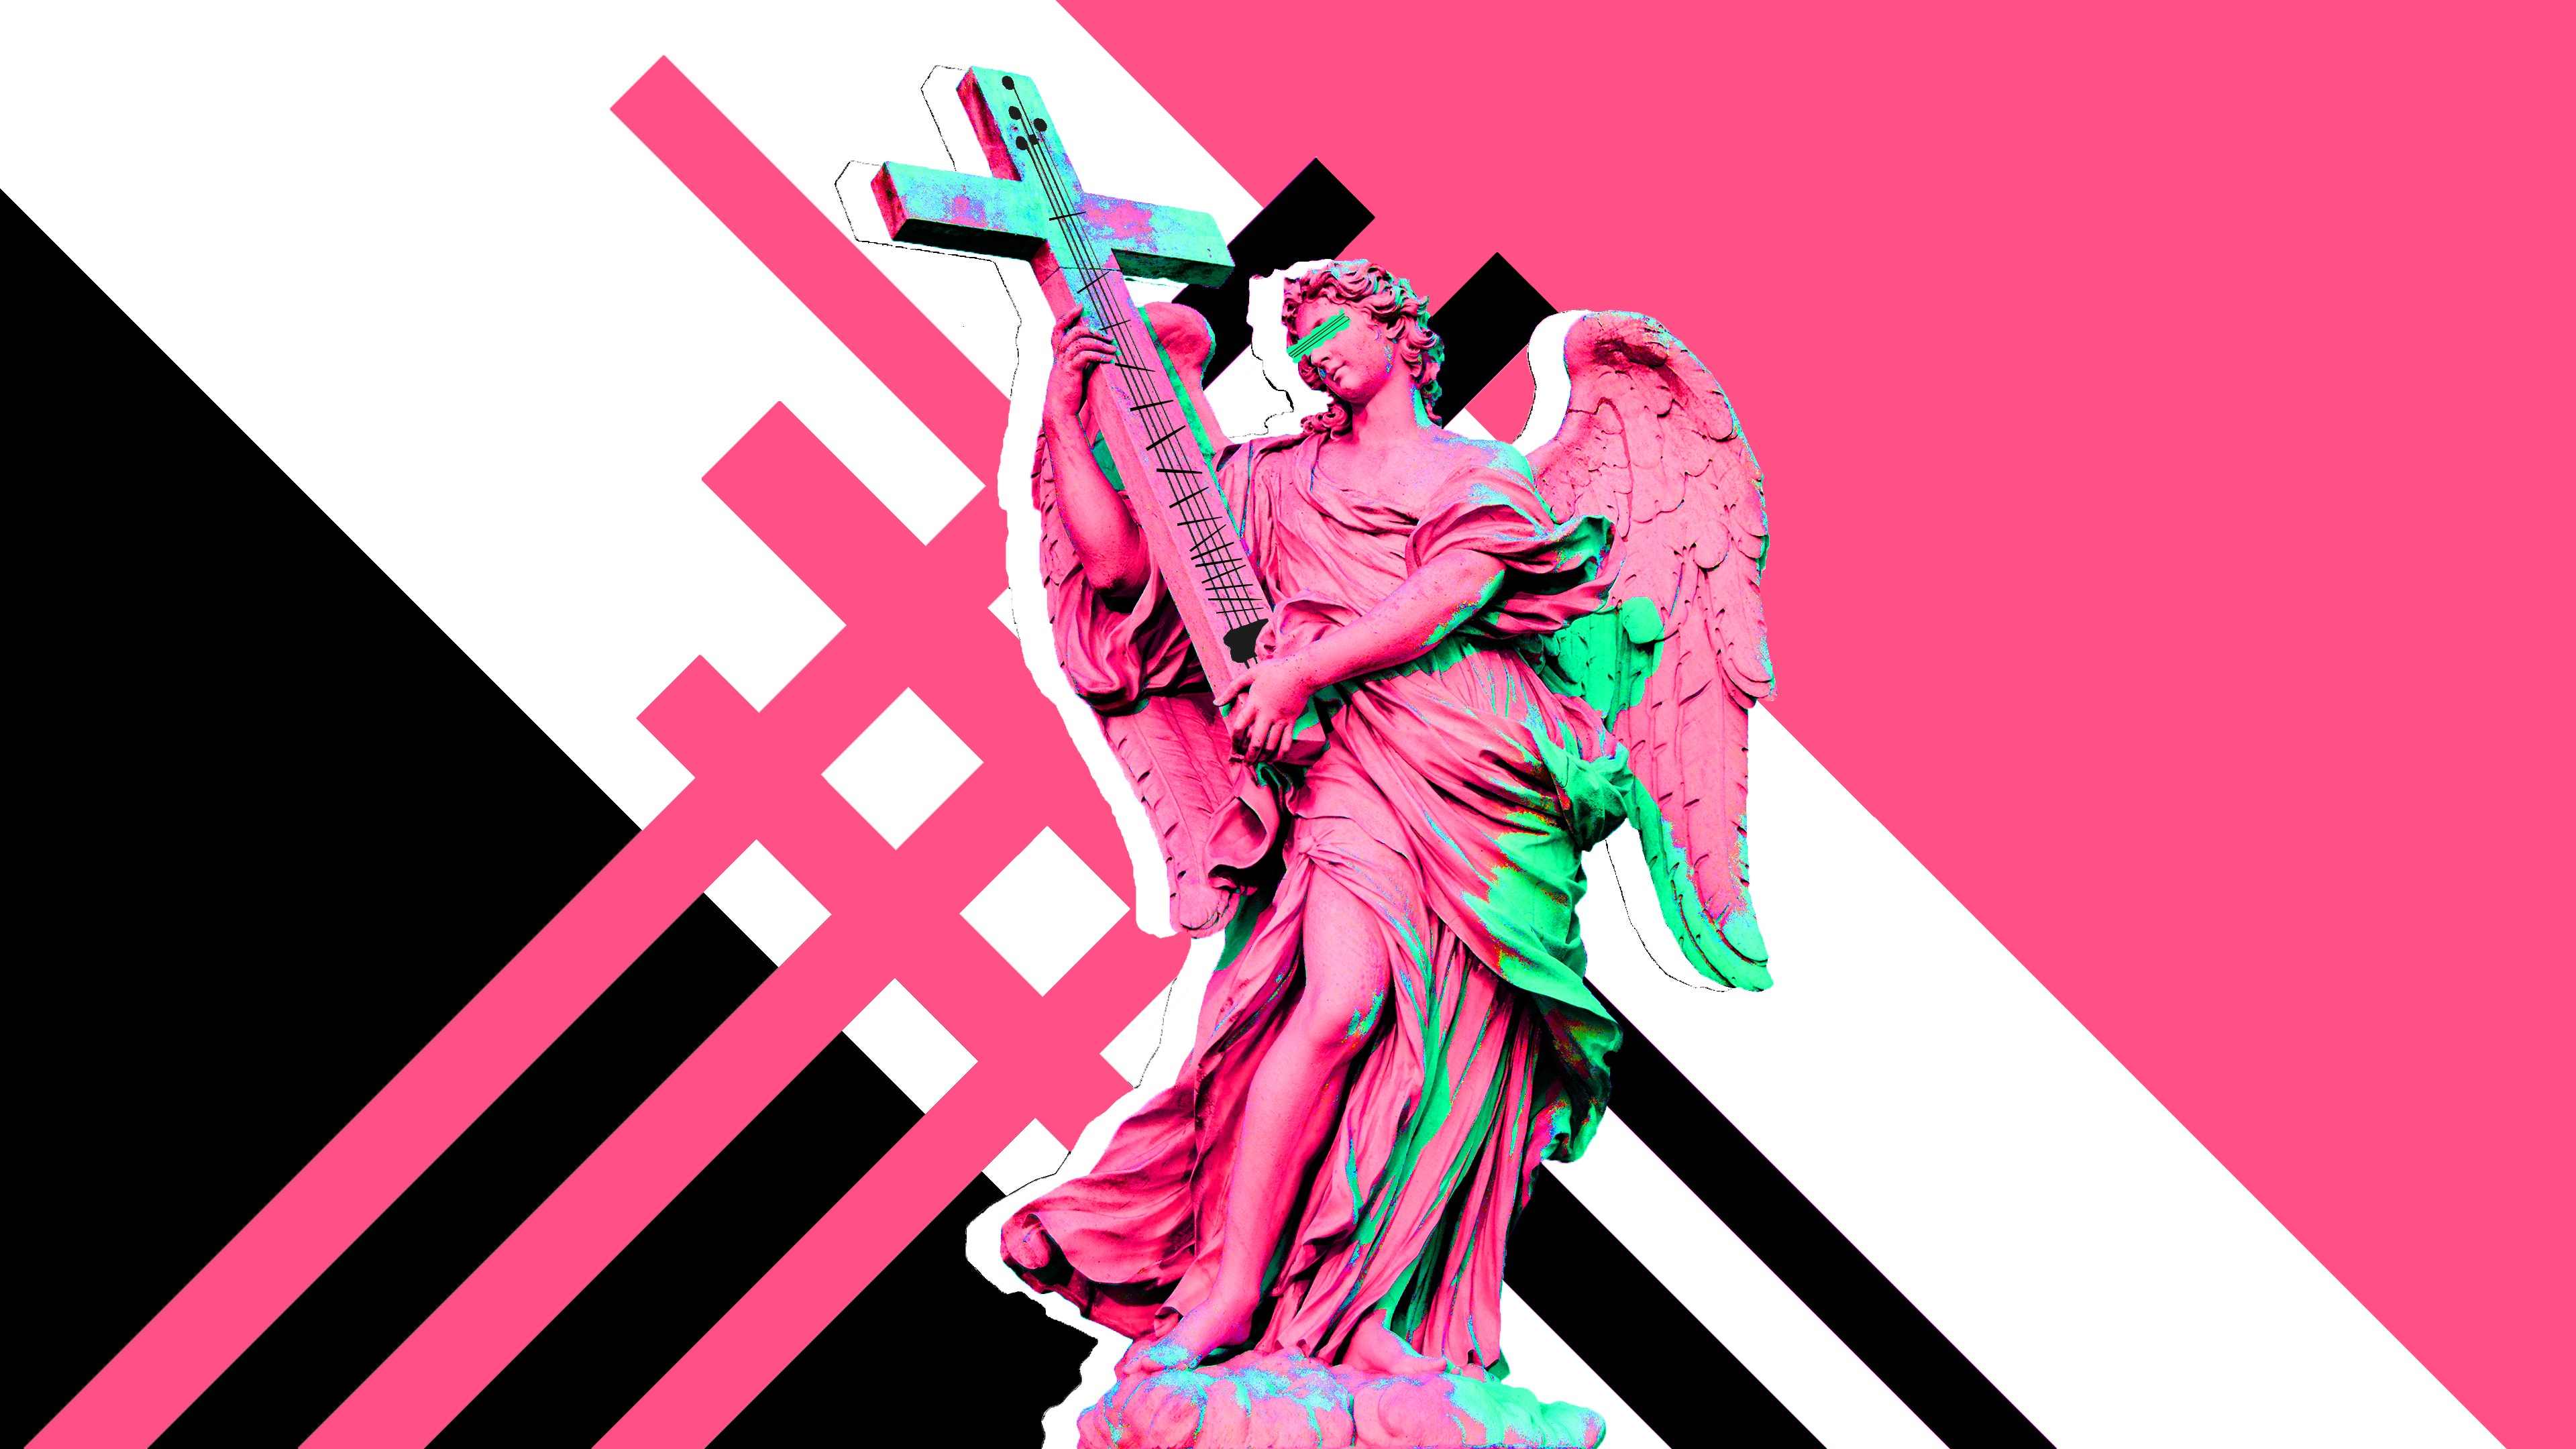 angel, Guitar, Musical instrument, Pink, Digital art, Statue Wallpaper